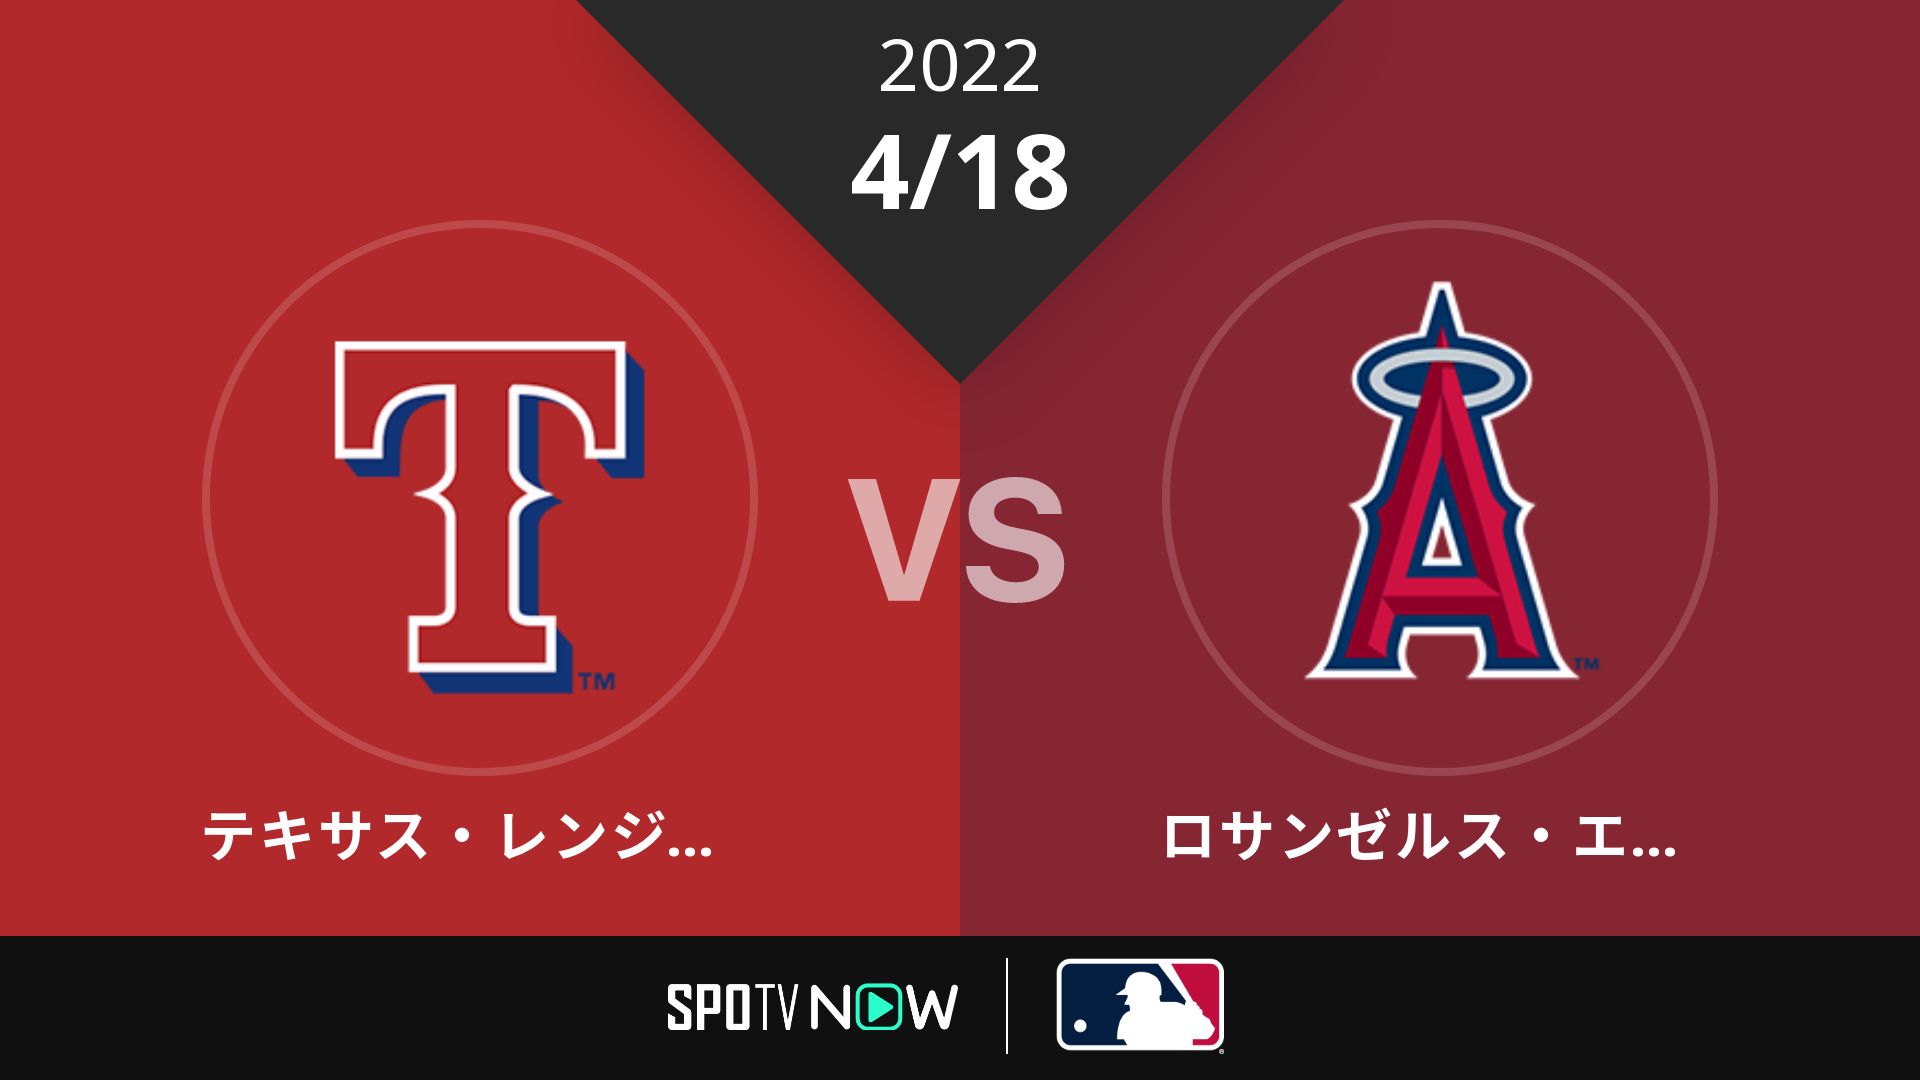 2022/4/18 レンジャーズ vs エンゼルス [MLB]